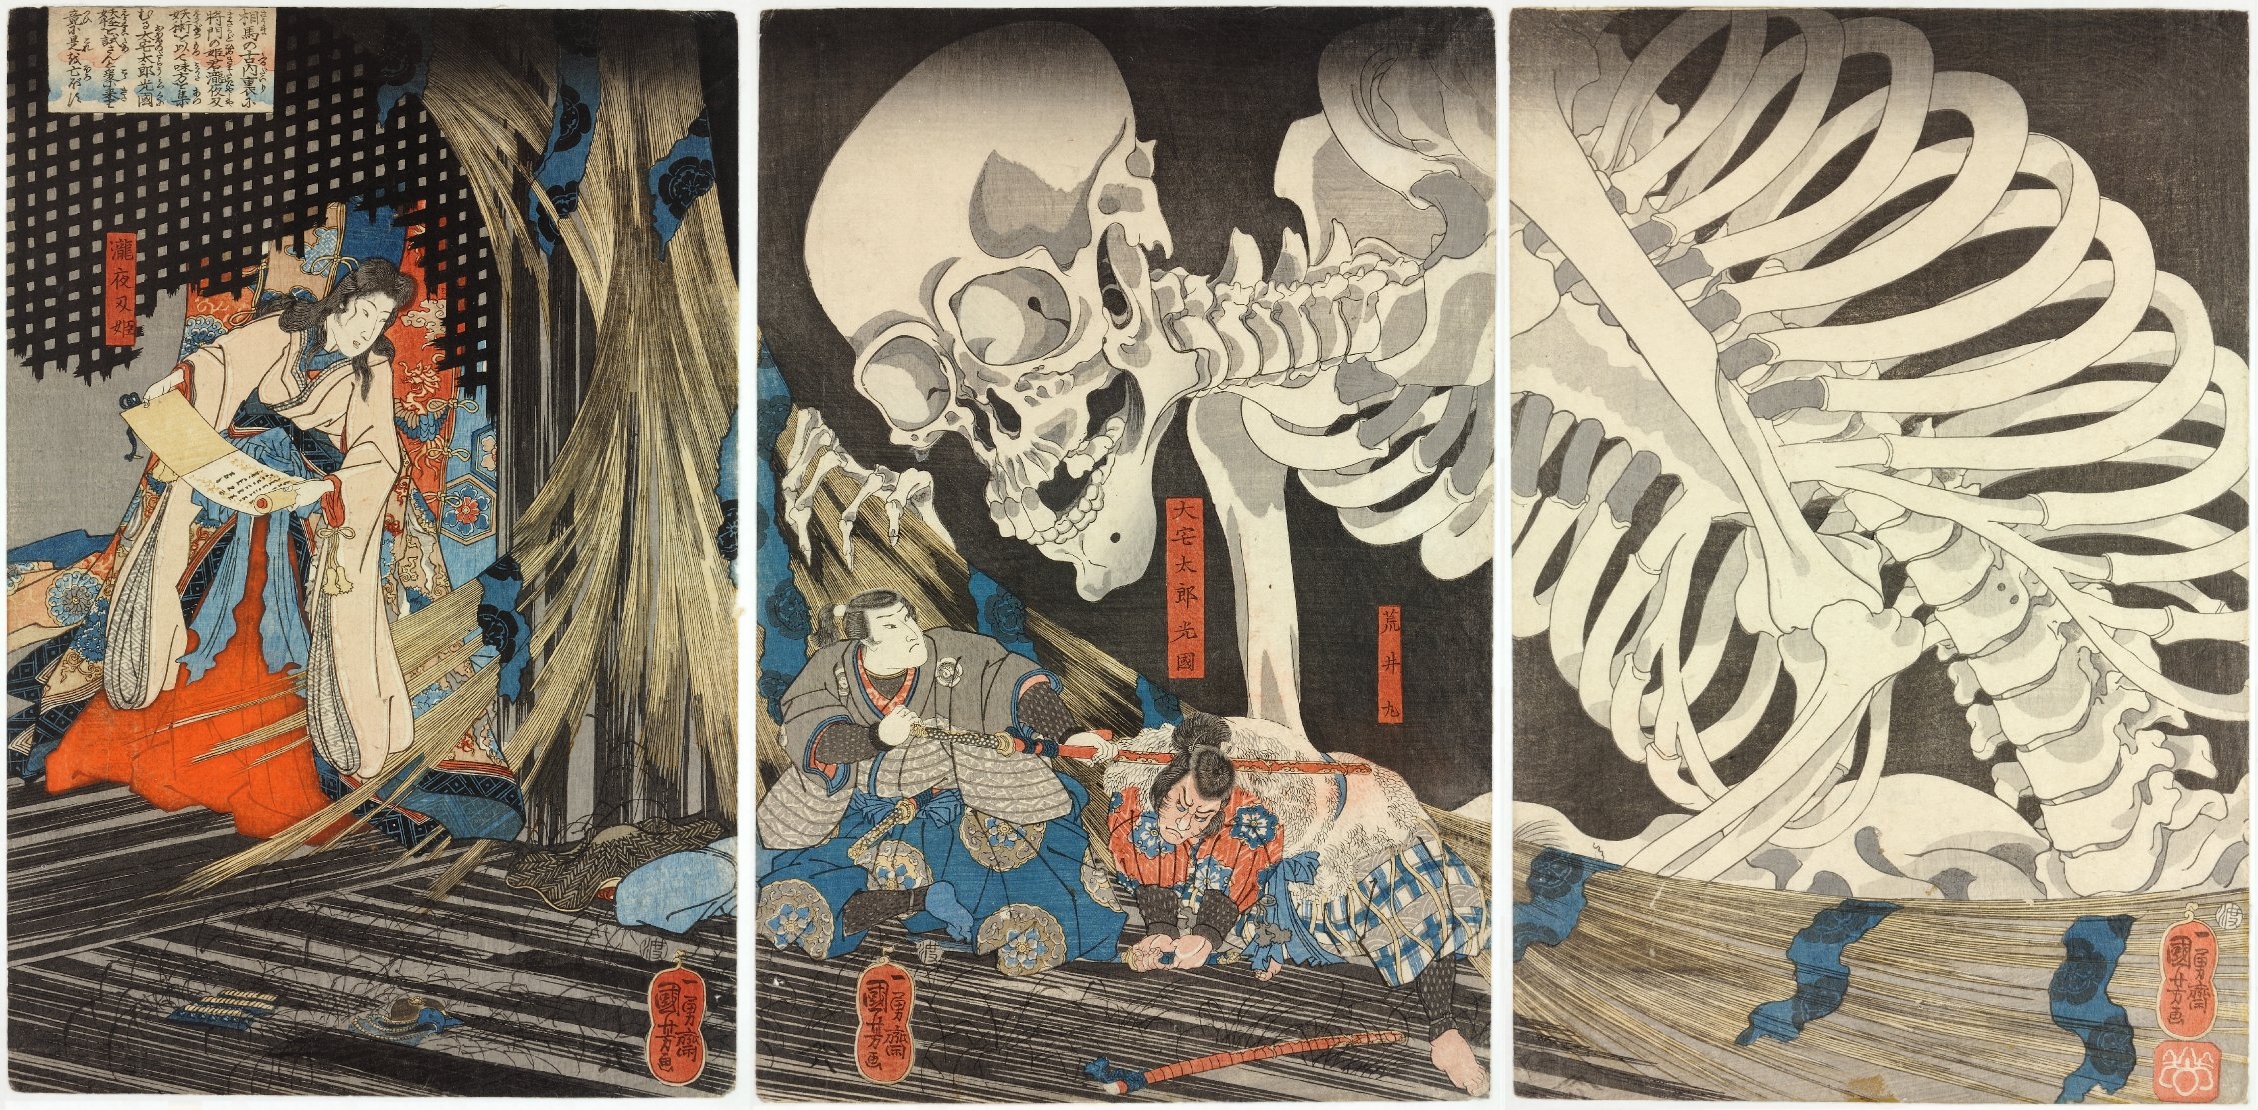 巫女泷夜叉与骷髅幽灵 by 宇田川 国吉 - c. 1844 - 35 x 71 cm 